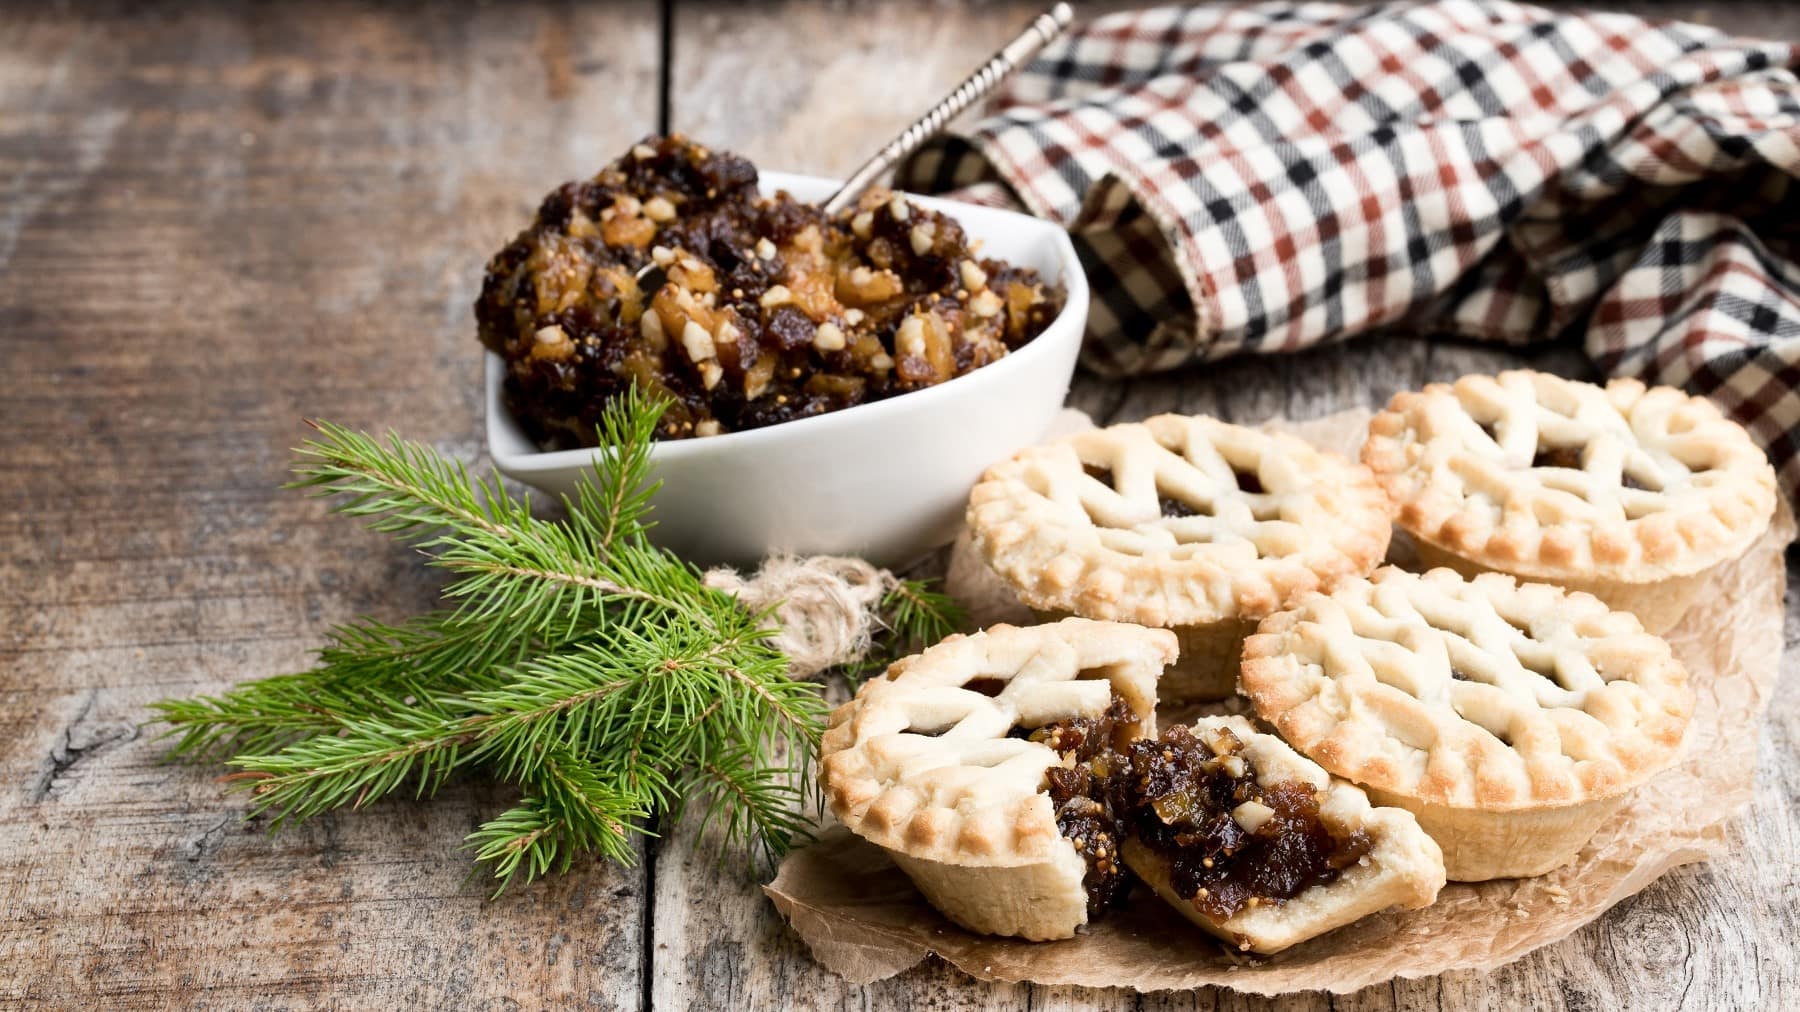 Mincemeat Pies mit frichem Mincemeat, bestäubt mit Puderzucker und angebrochen serviert auf einem hölzernen Tisch mit weihnachtlichem Dekor.